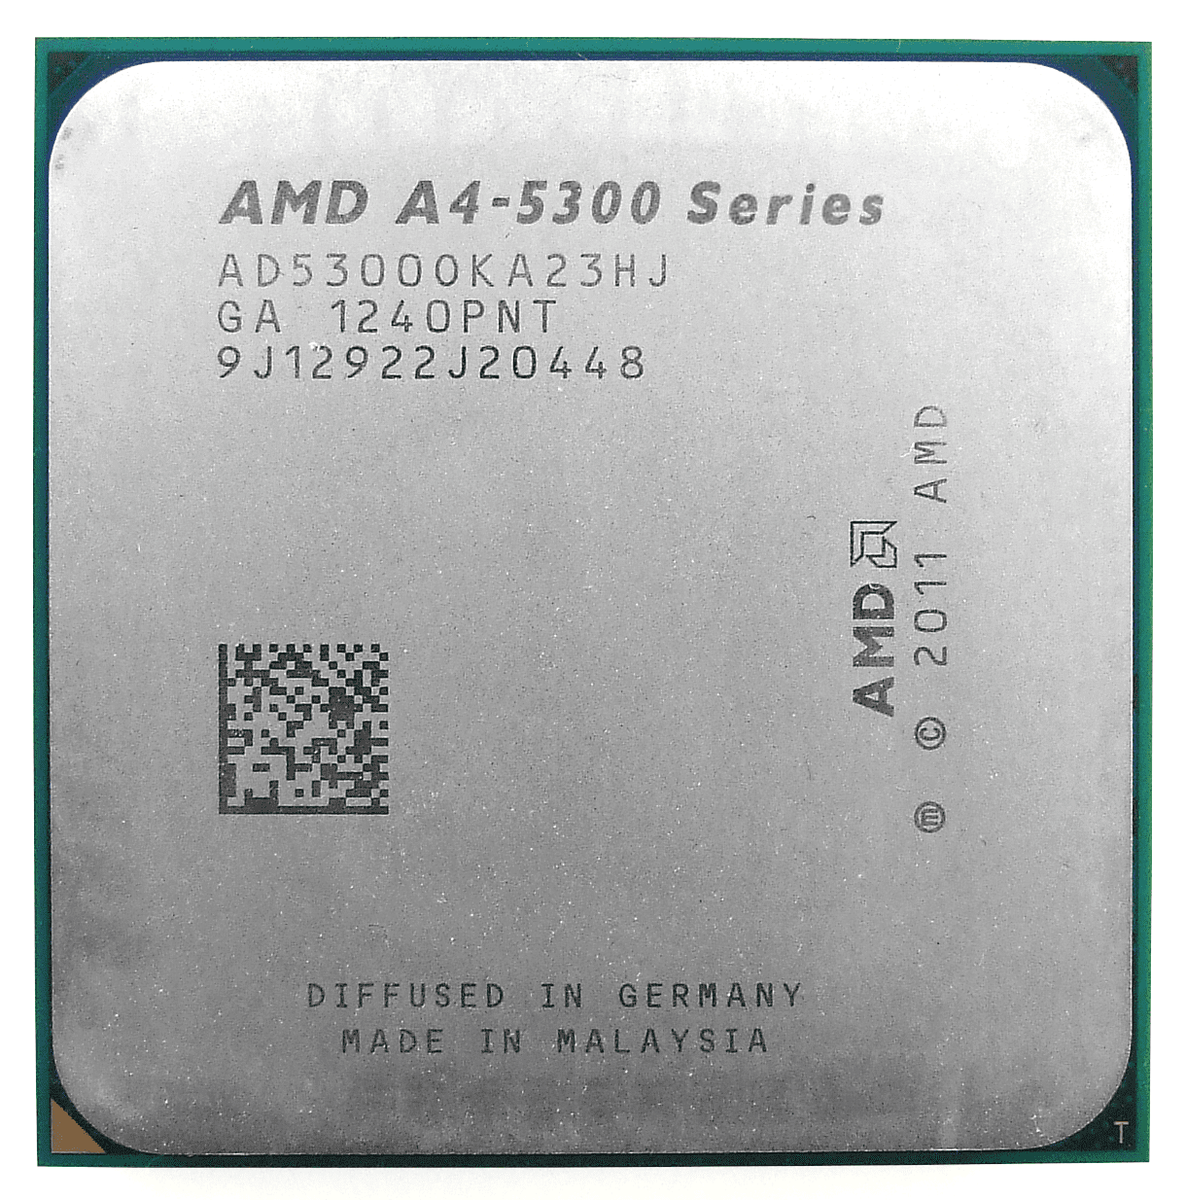 Cos'è un processore AMD A4?